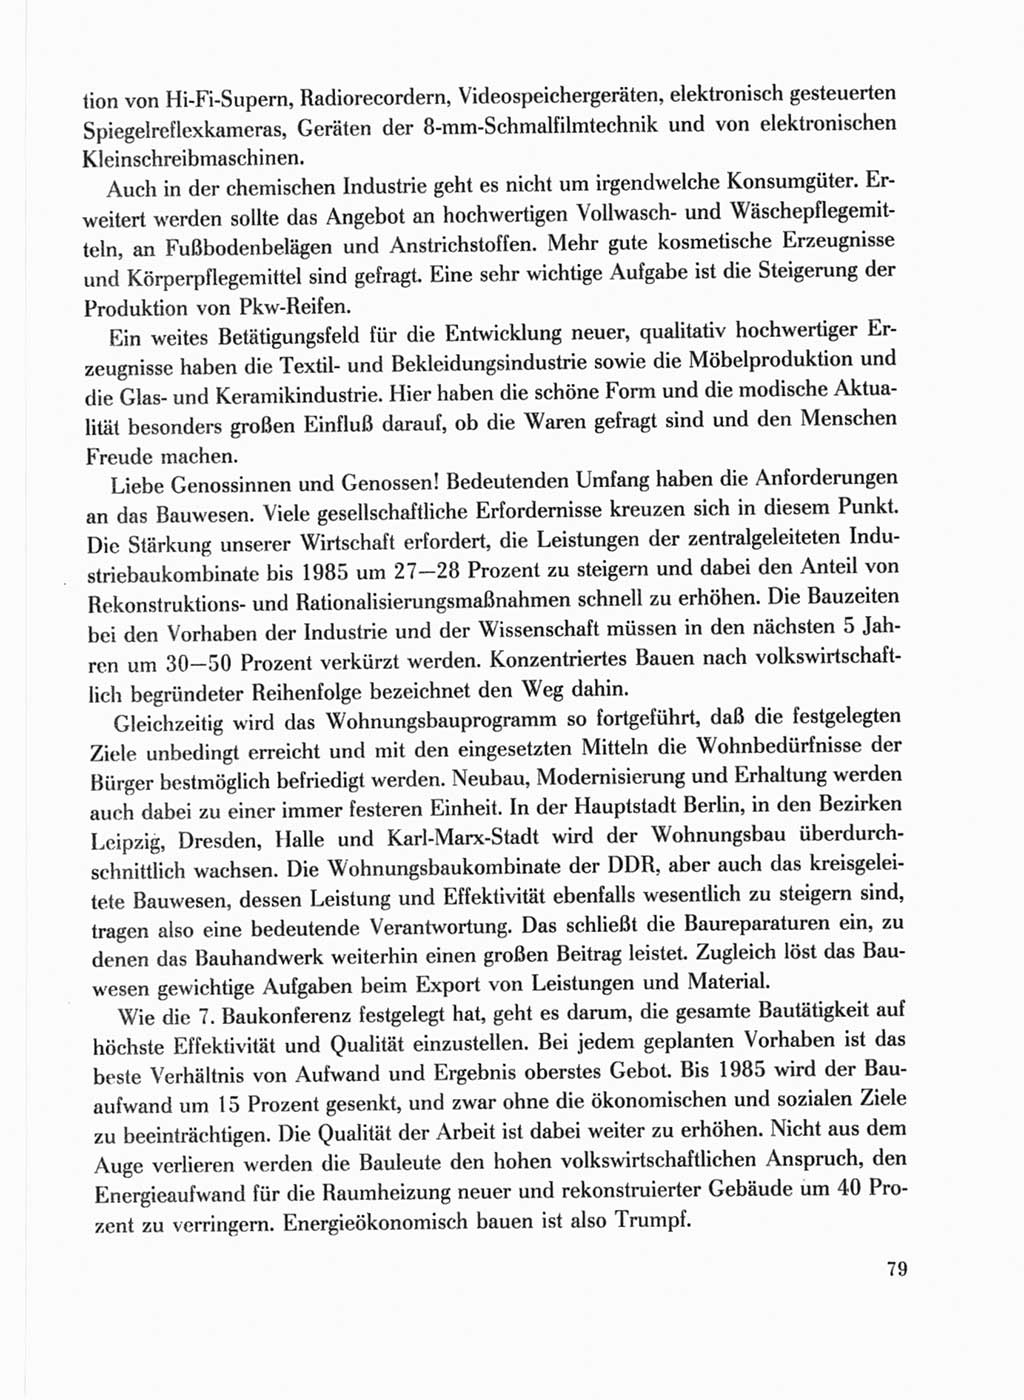 Protokoll der Verhandlungen des Ⅹ. Parteitages der Sozialistischen Einheitspartei Deutschlands (SED) [Deutsche Demokratische Republik (DDR)] 1981, Band 1, Seite 79 (Prot. Verh. Ⅹ. PT SED DDR 1981, Bd. 1, S. 79)